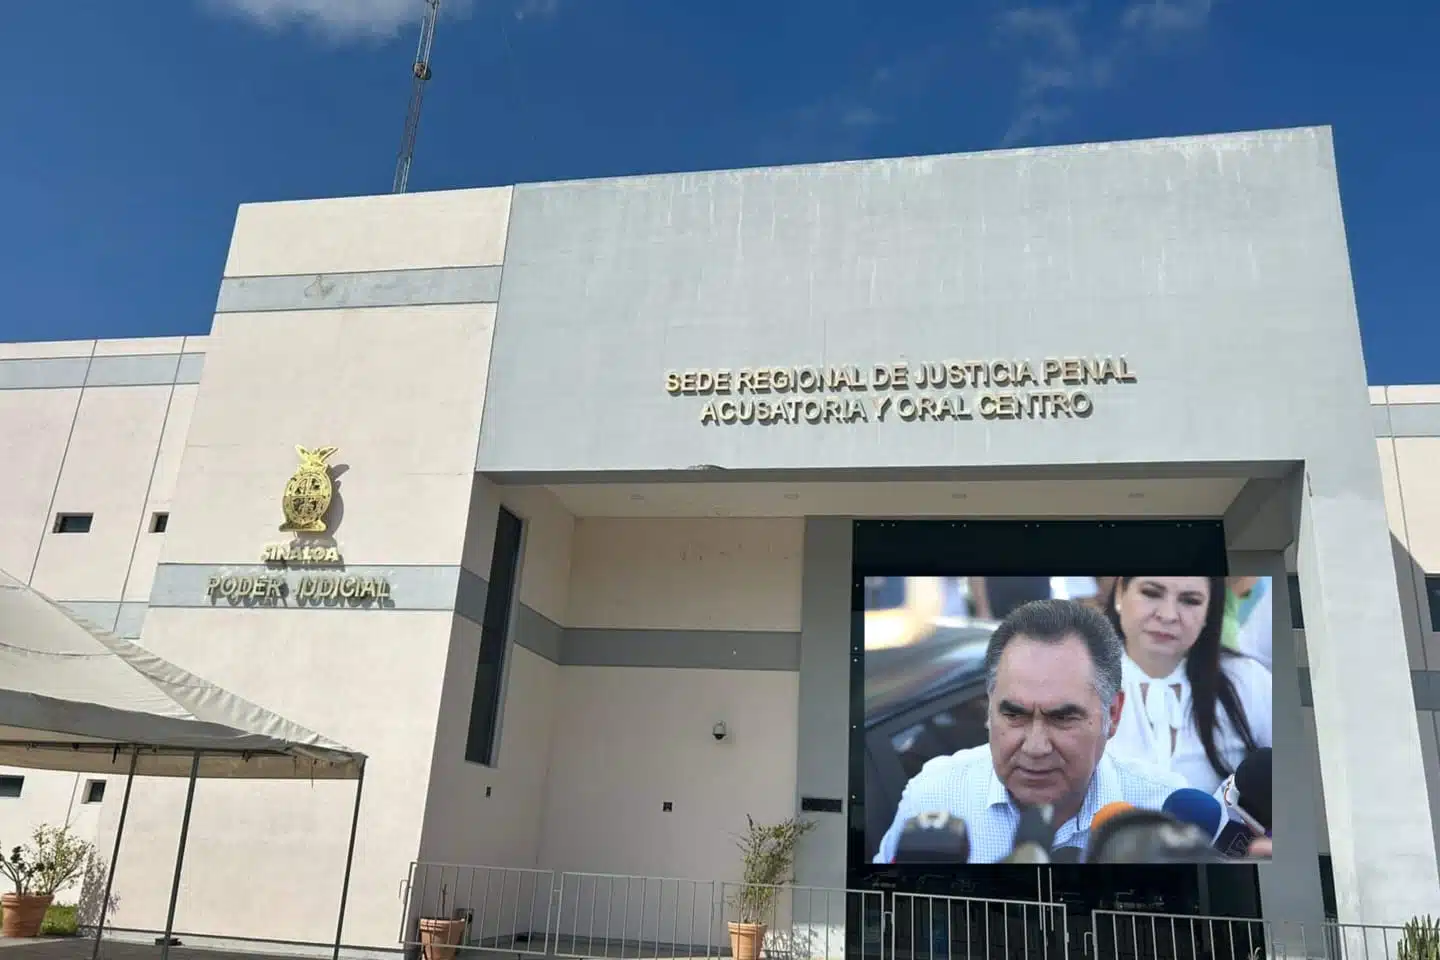 Sede Regional de Justicia Penal Acusatoria y Oral Centro y Madueña de lado izquierdo